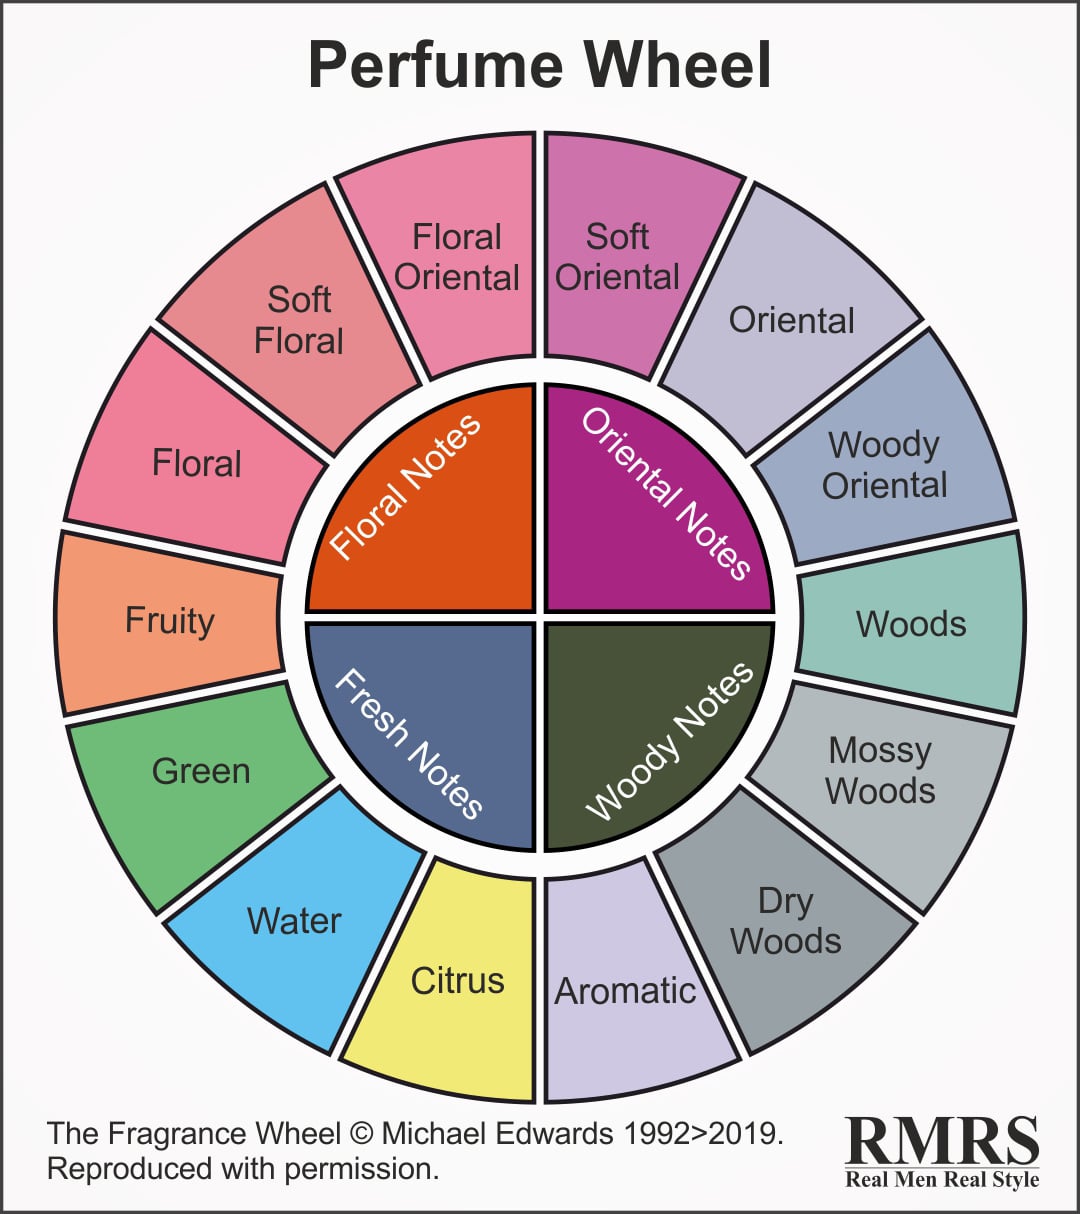 A perfume wheel.